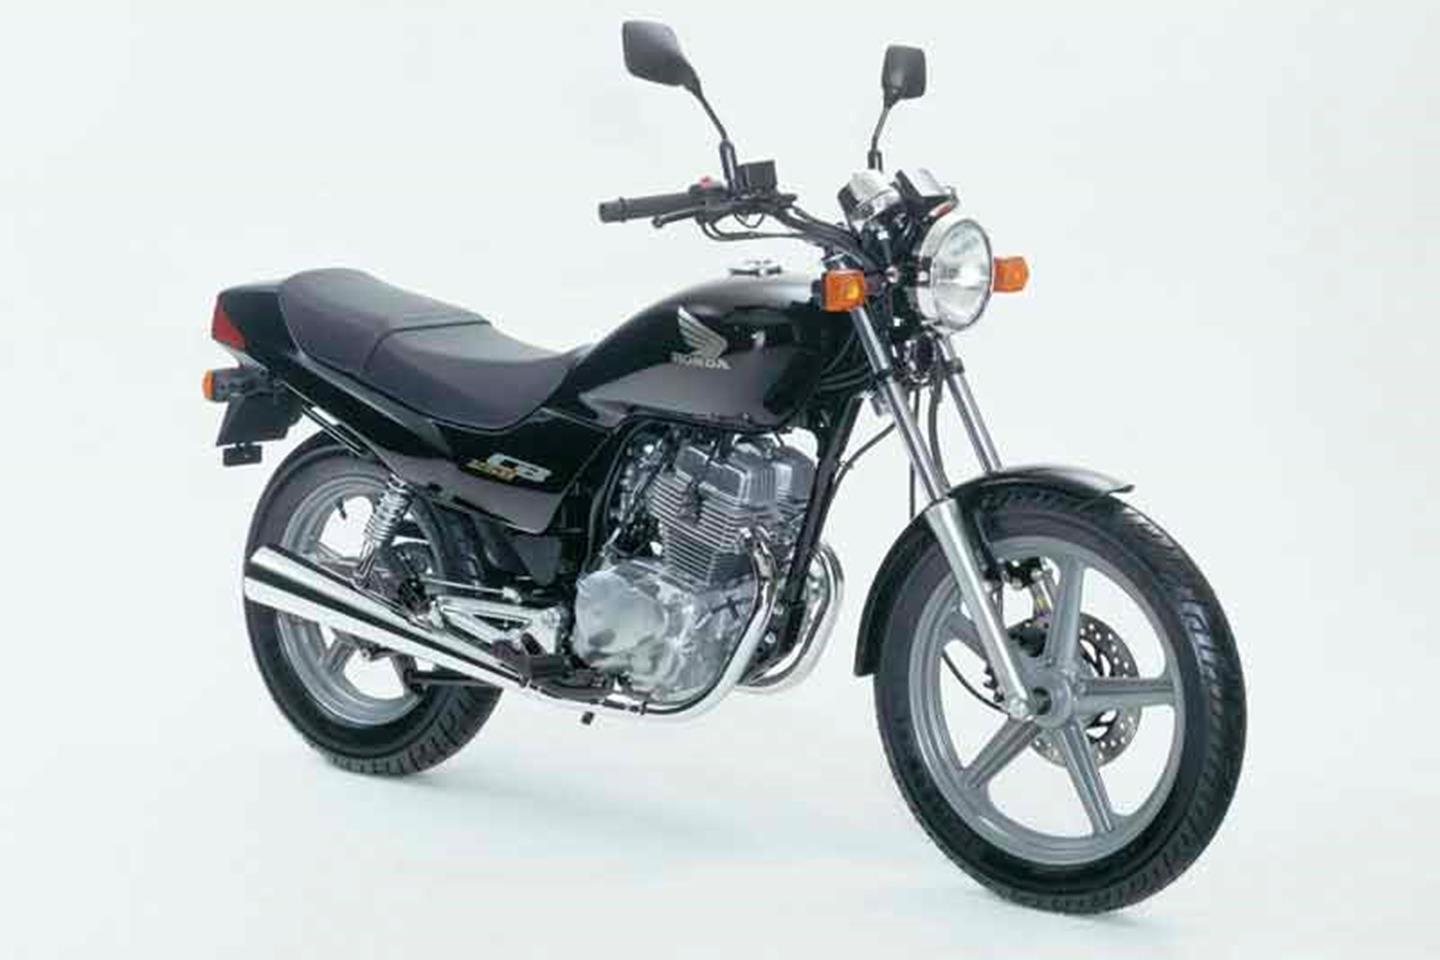 Honda cb 1100 cafe racer - фото и технические характеристики мото | хонда цб 1100 - история, модификации модели мотоцикла